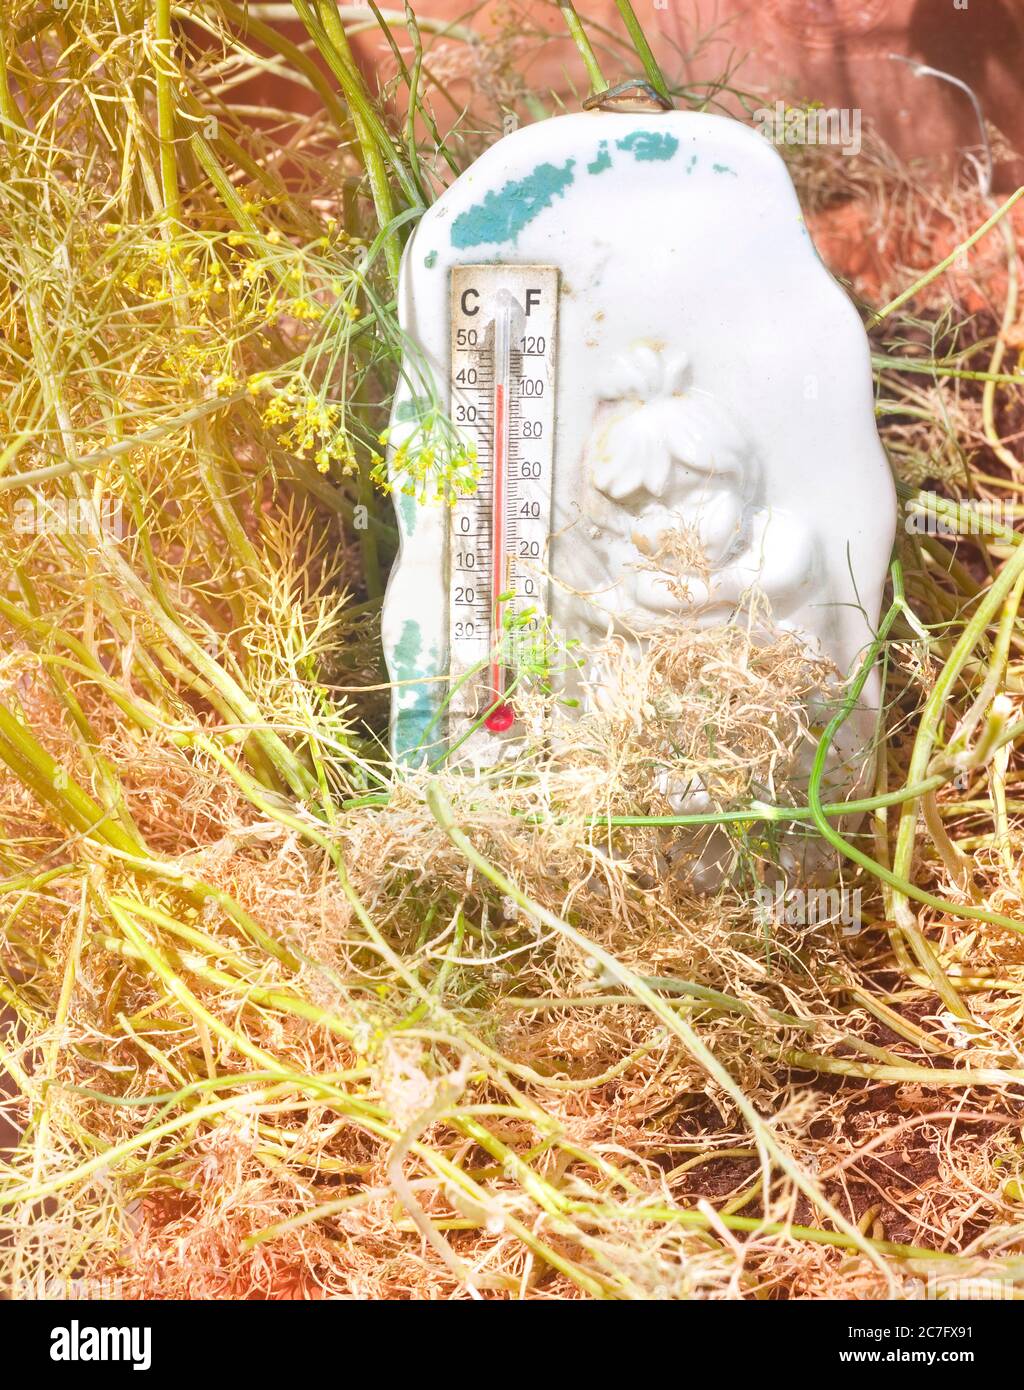 ola de calor en el verano con termómetro que muestra alta temperatura y plantas de sere Foto de stock